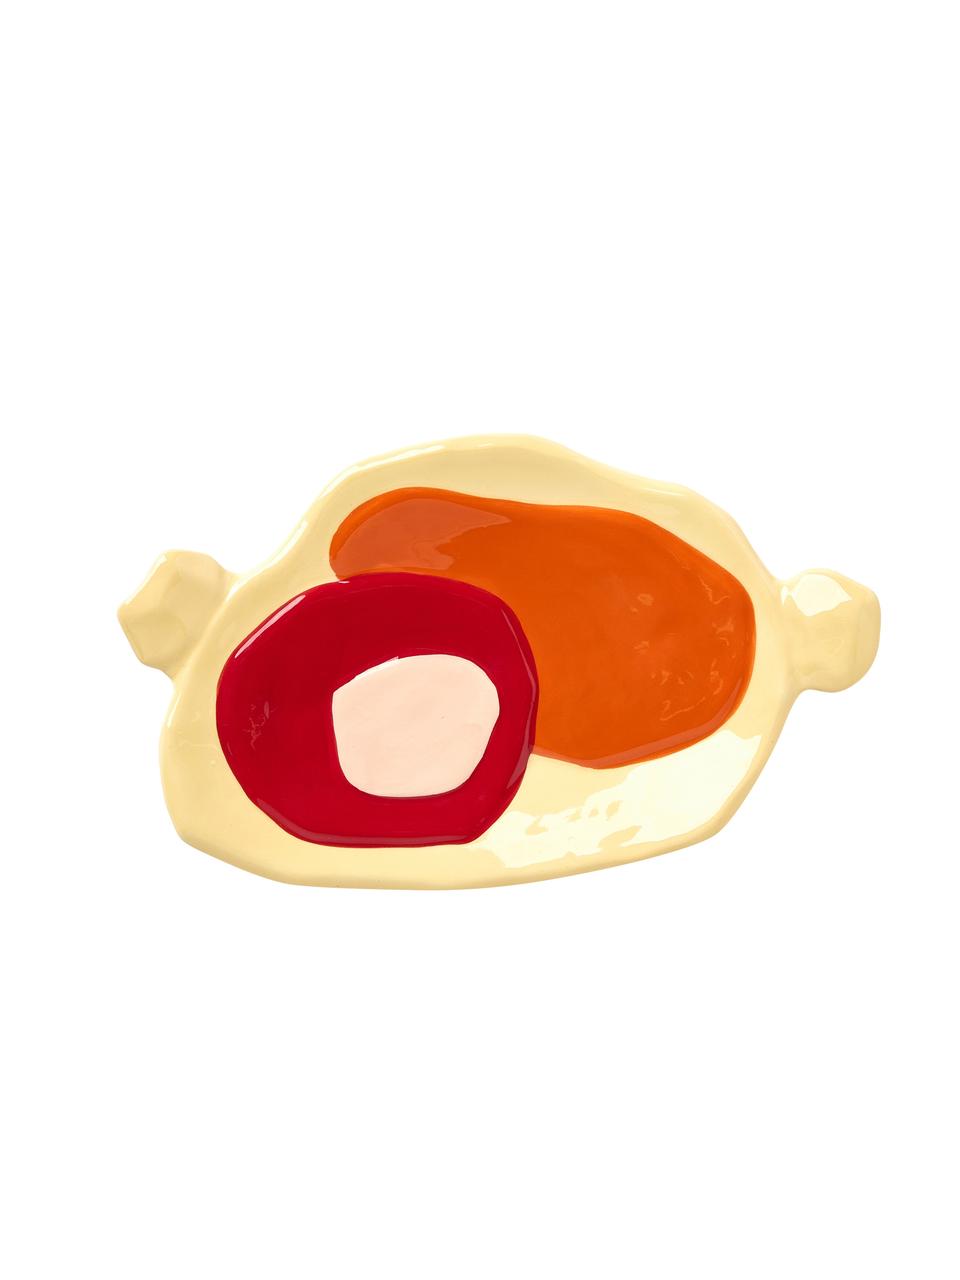 Ręcznie malowany talerz do serwowania z porcelany Chunky, Porcelana, Żółty, pomarańczowy, czerwony, blady różowy, S 19 x G 12 cm